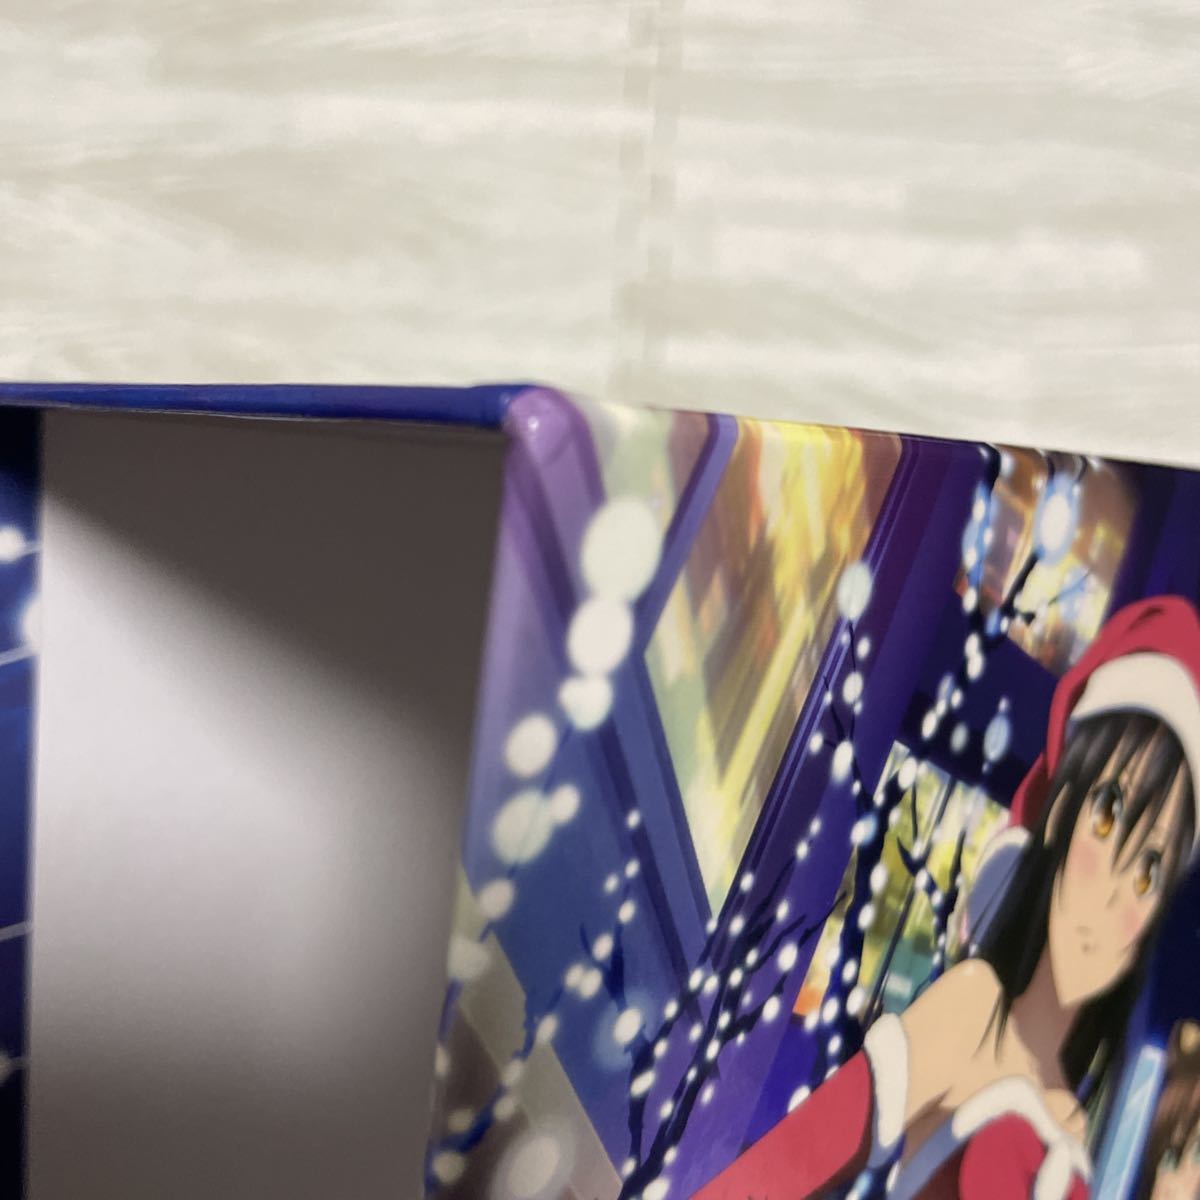 ストライク・ザ・ブラッド IV OVA Blu-ray ＋スペシャルOVA 消えた聖槍篇 全7巻 ソフマップ全巻購入特典 描き下ろし全巻収納BOX